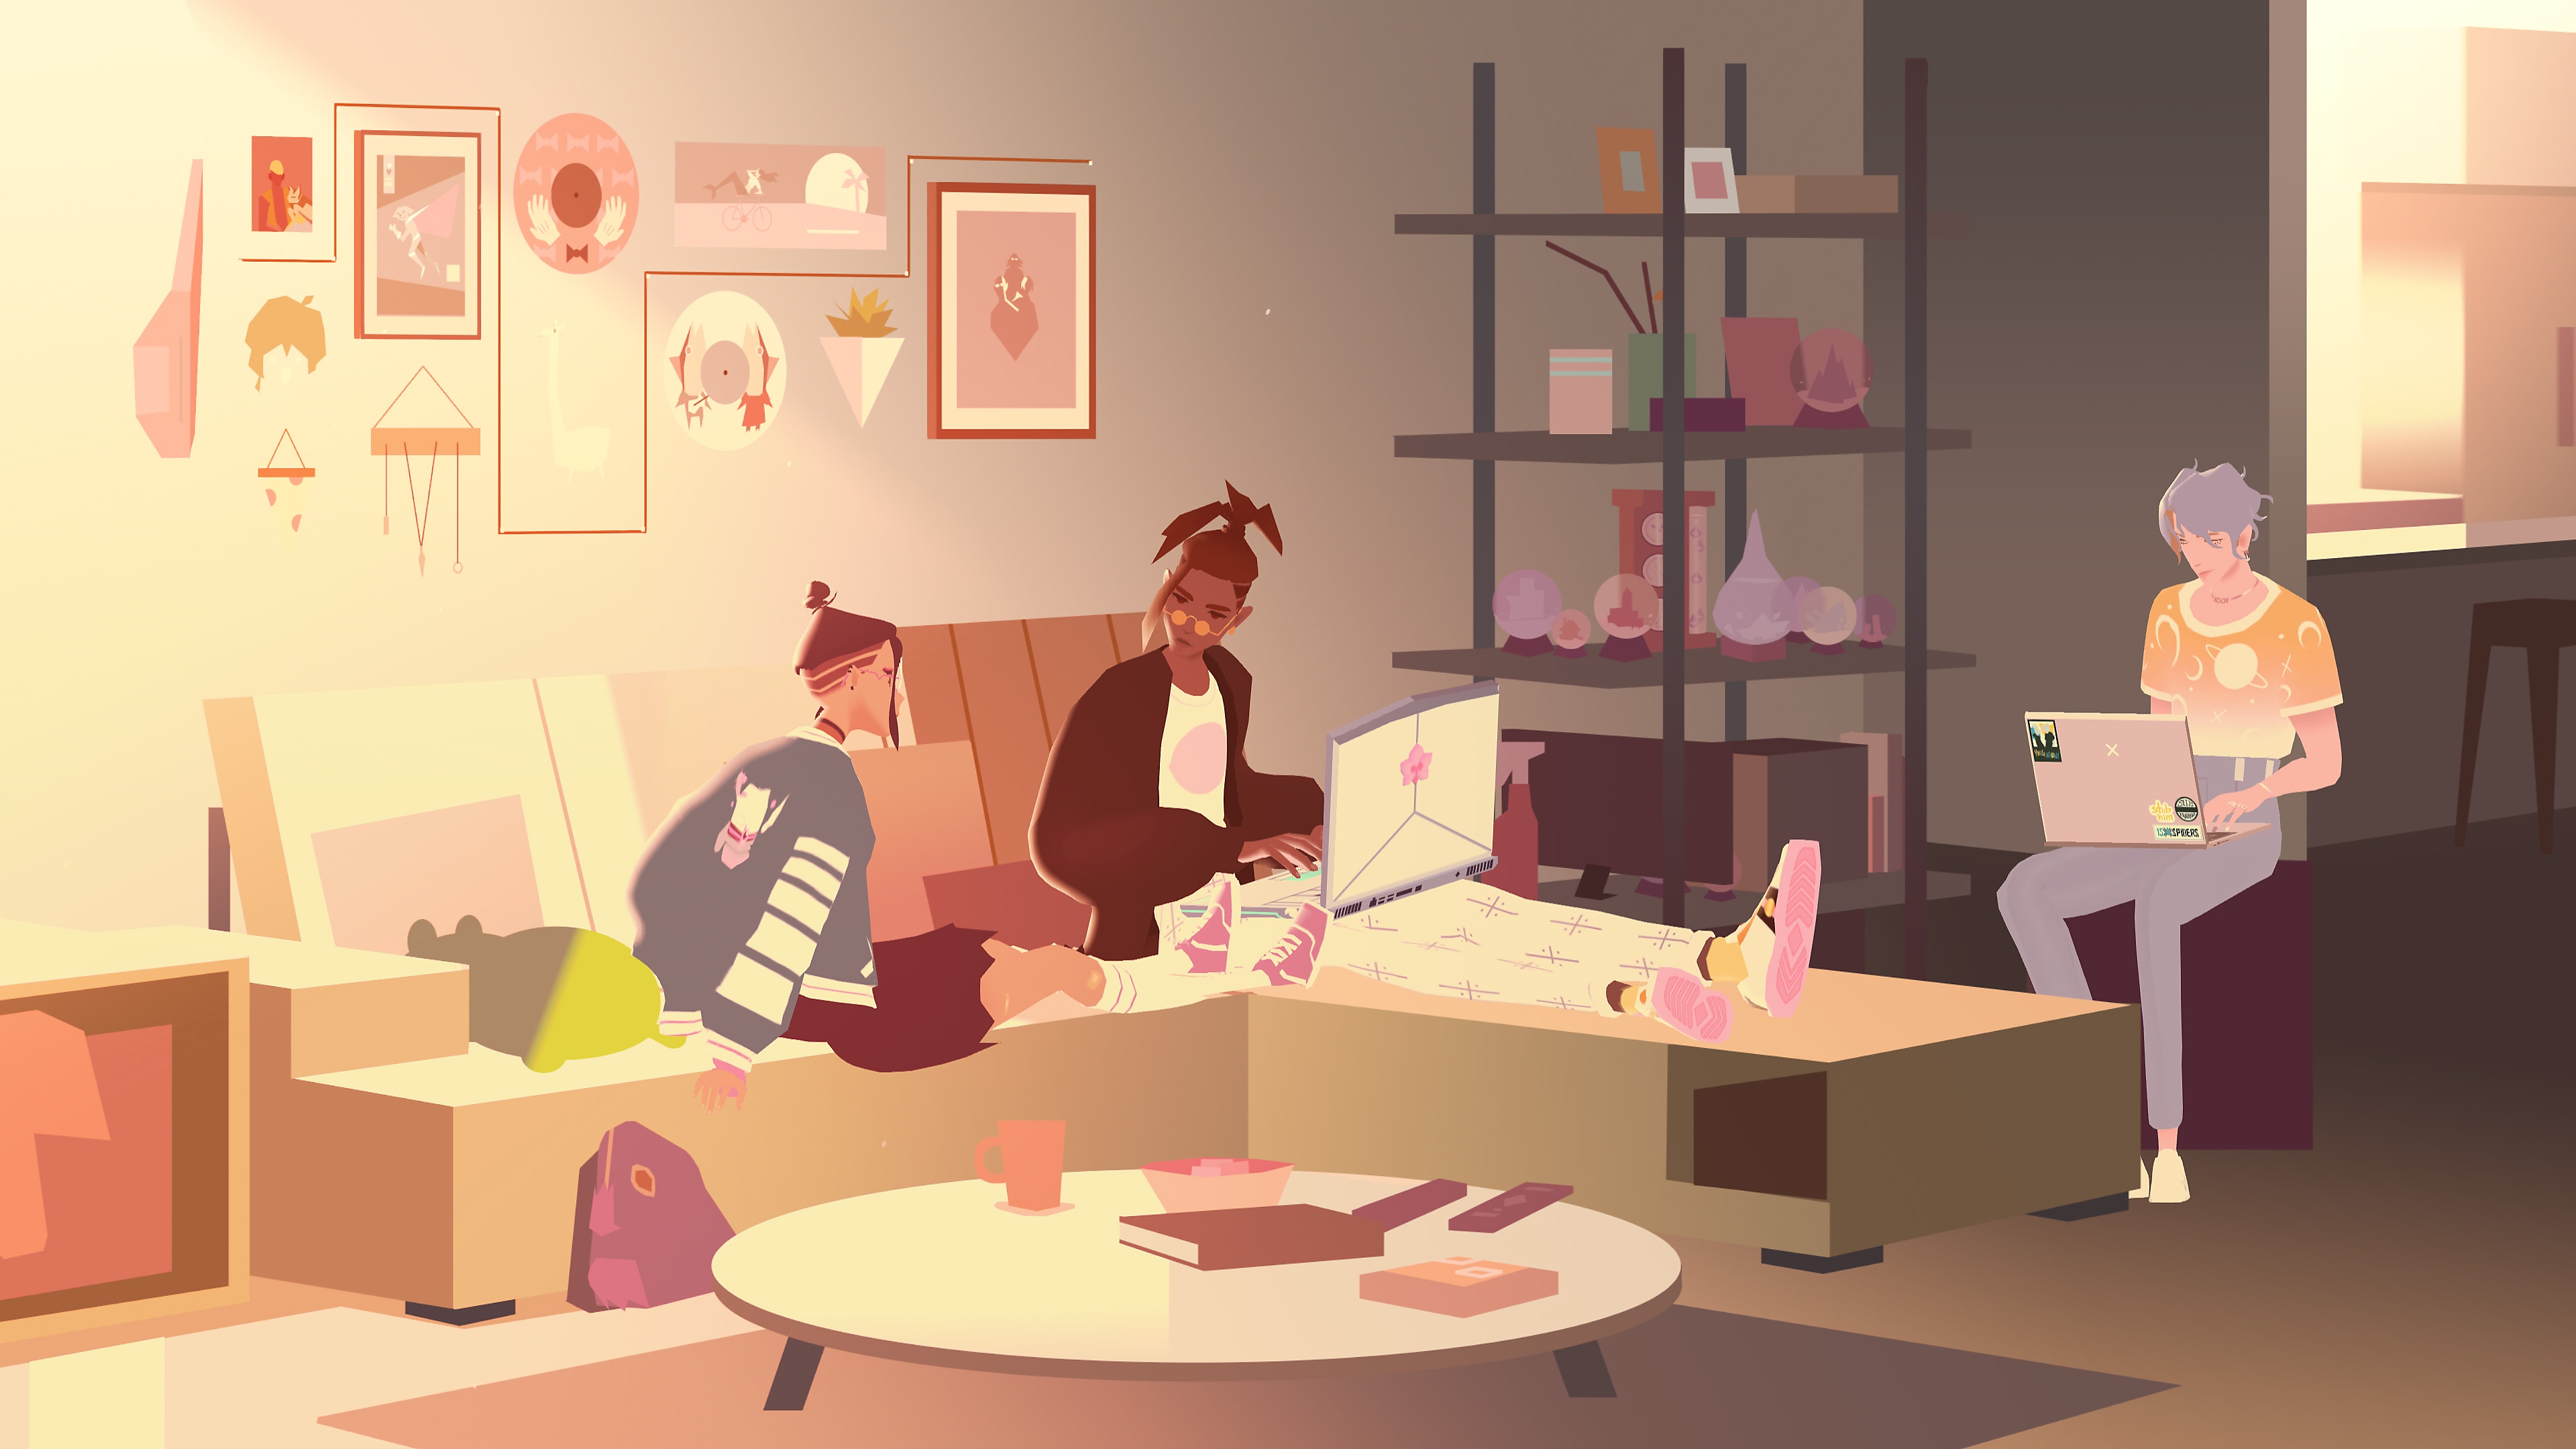 لقطة شاشة للعبة We Are OFK تظهر فيها ثلاث شخصيات في غرفة معيشة